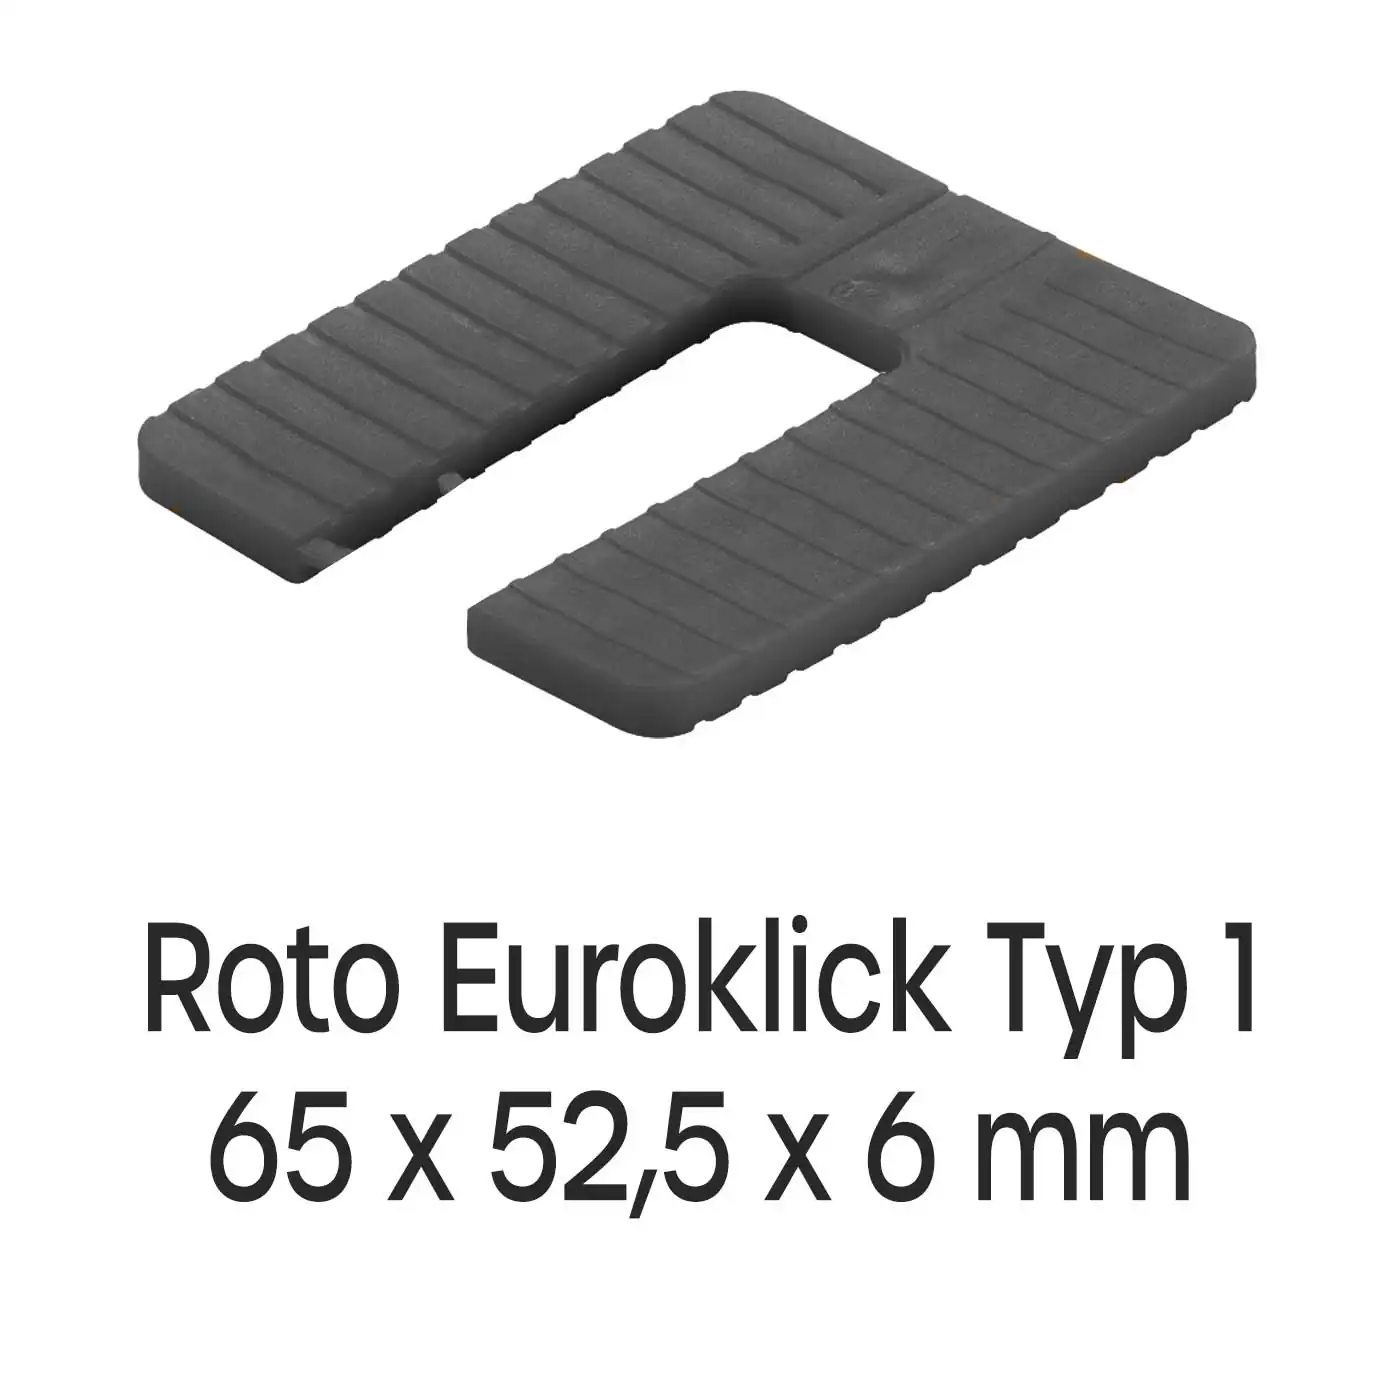 Distanzplatten Roto Euroklick Typ 1 65 x 52,5 x 6 mm 500 Stück